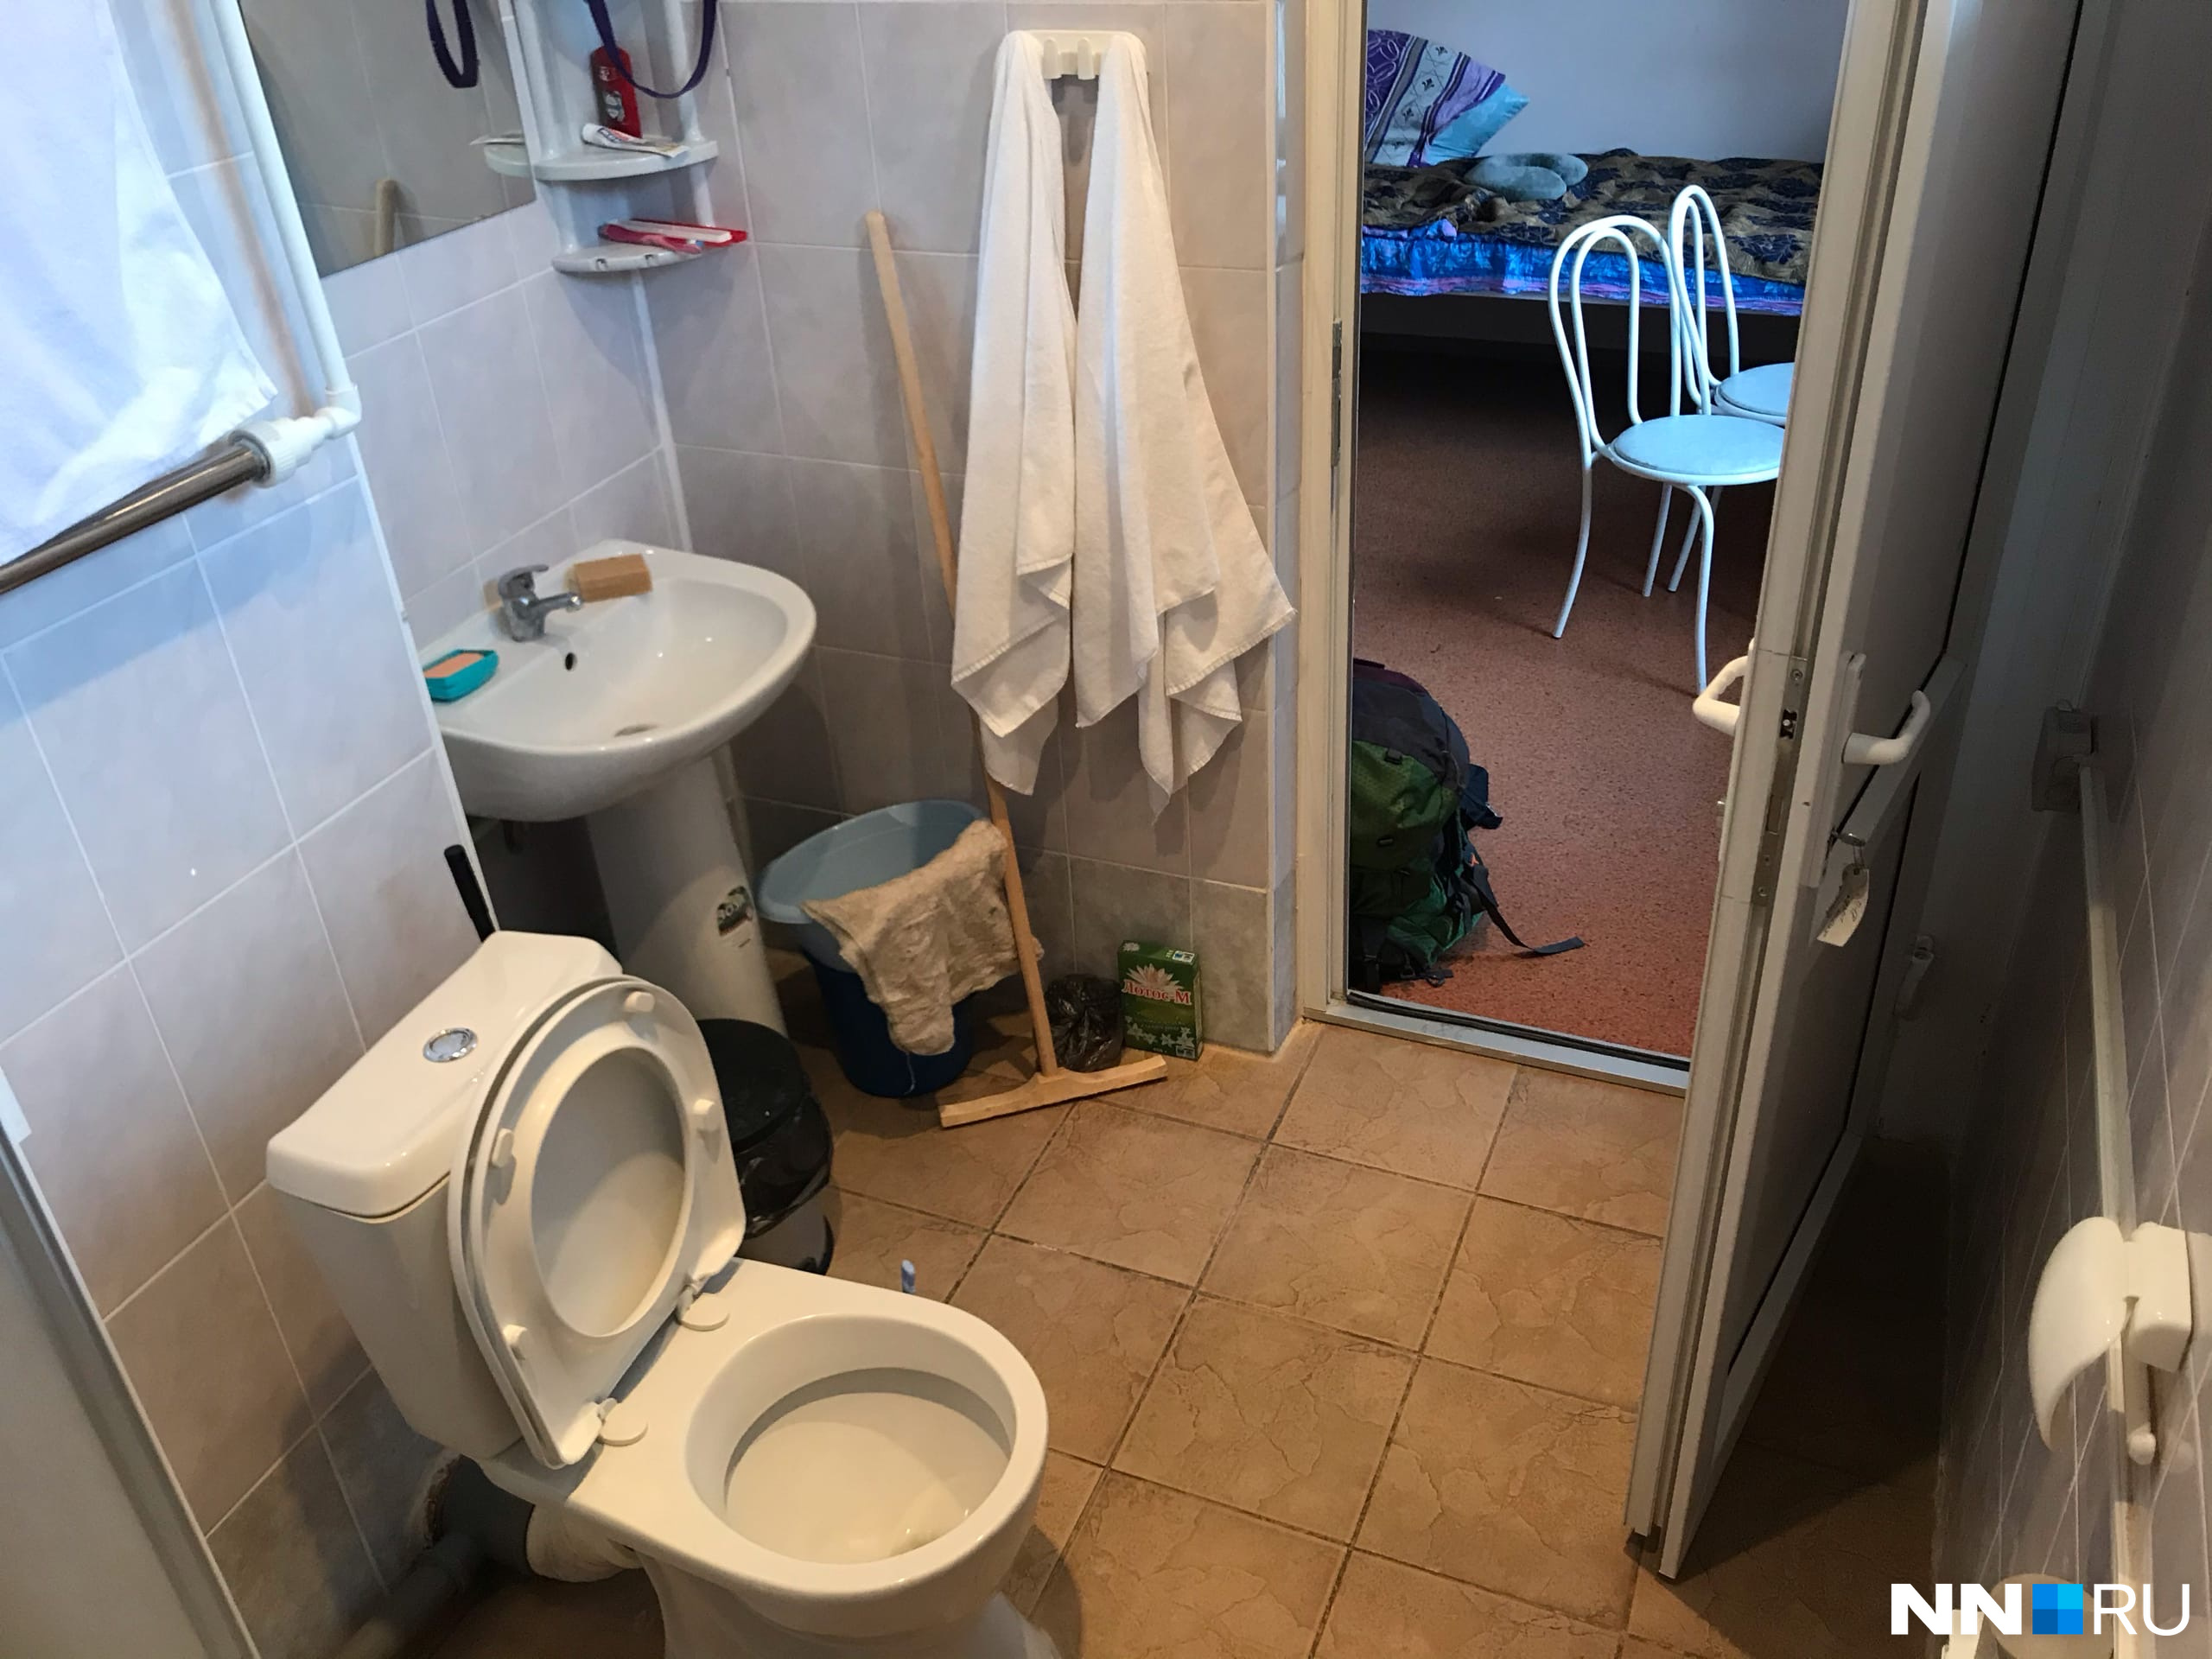 Туалет и душ находятся прямо в комнате, чтобы люди никуда из неё не выходили